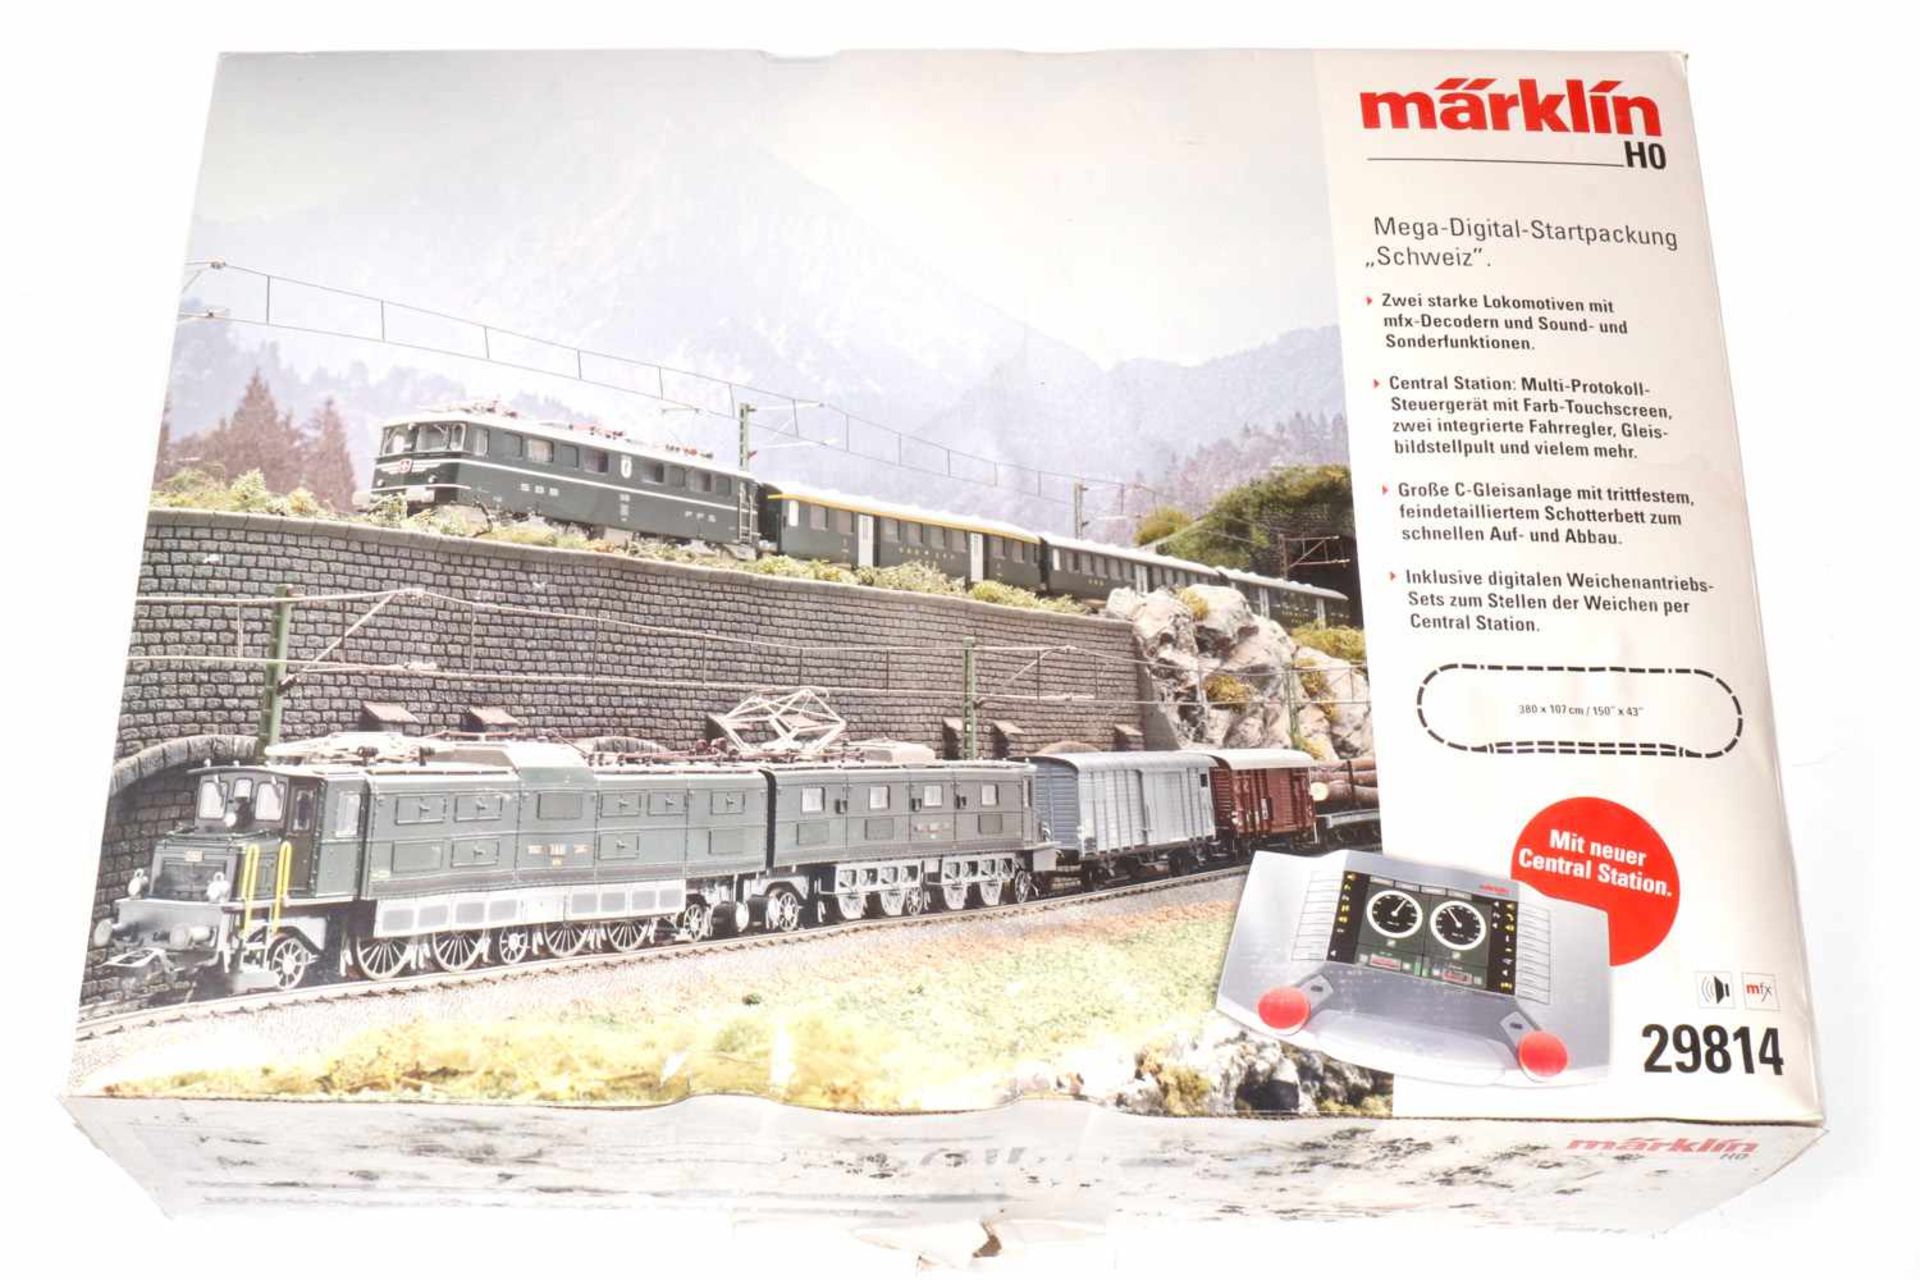 Märklin Mega-Digital-Startpackung "Schweiz" 29814, S H0, mit 2 Lokomotiven, 8 Wagen und